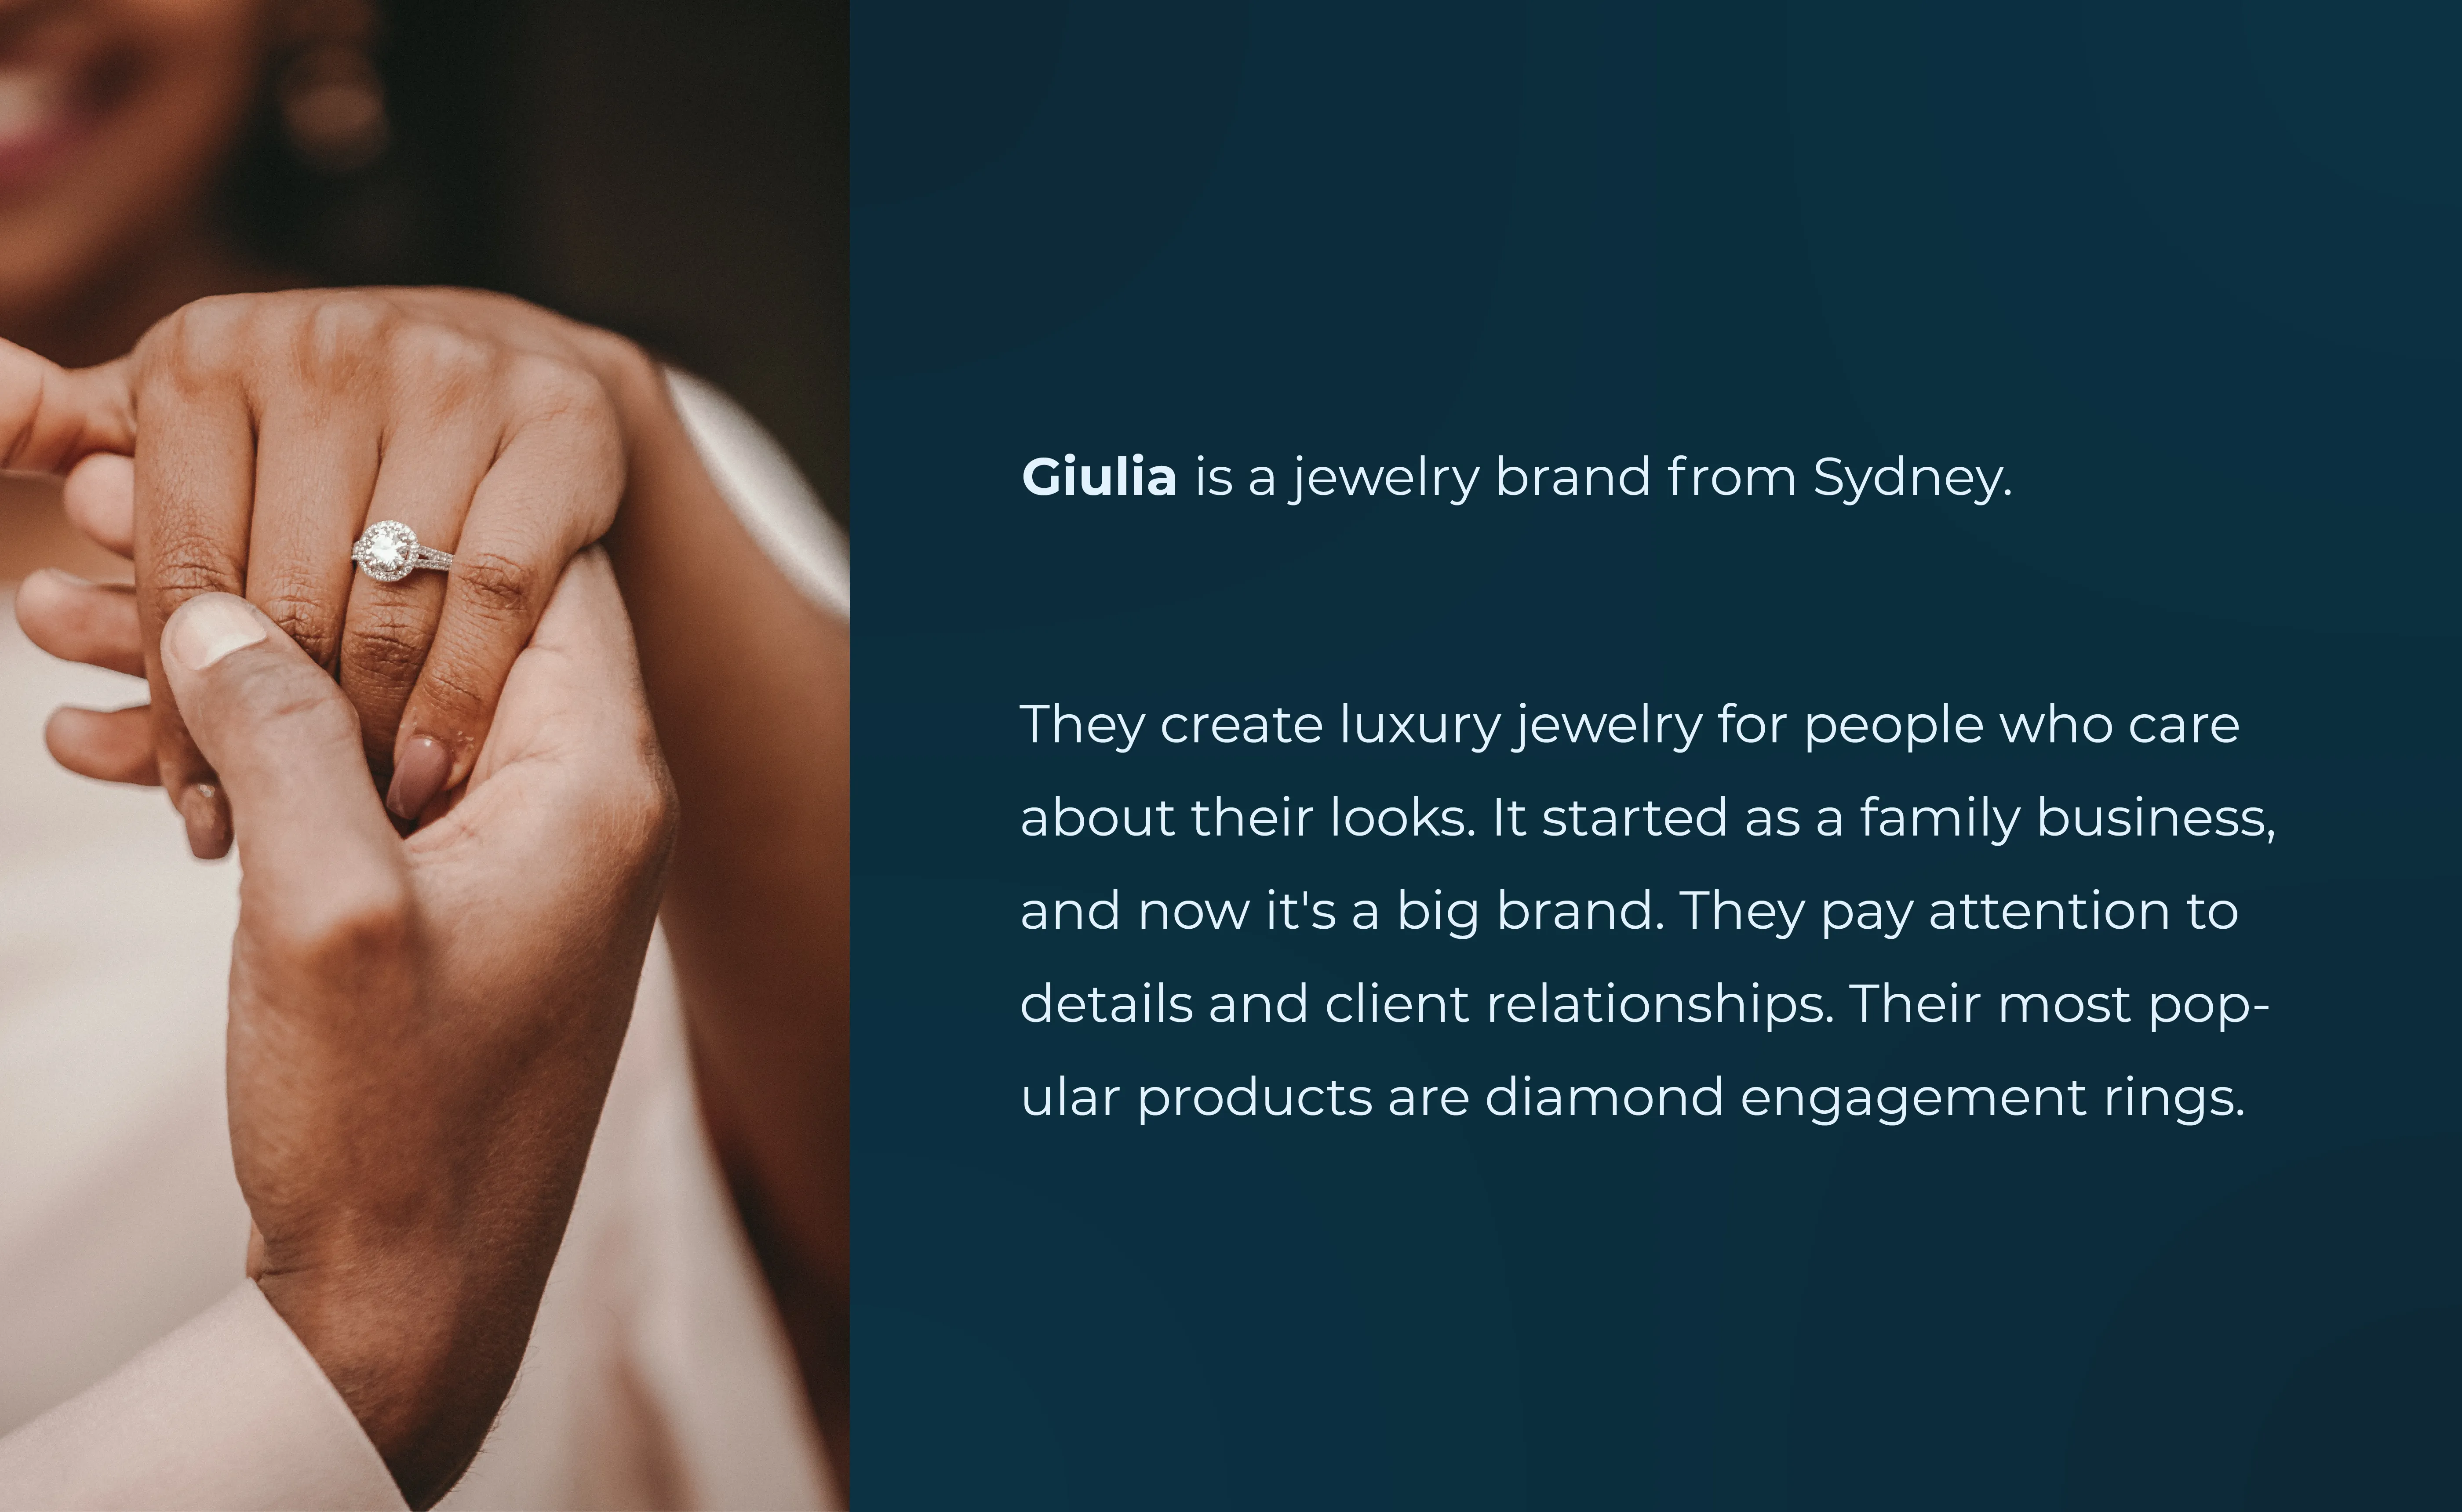 Giulia Brand Identity Design